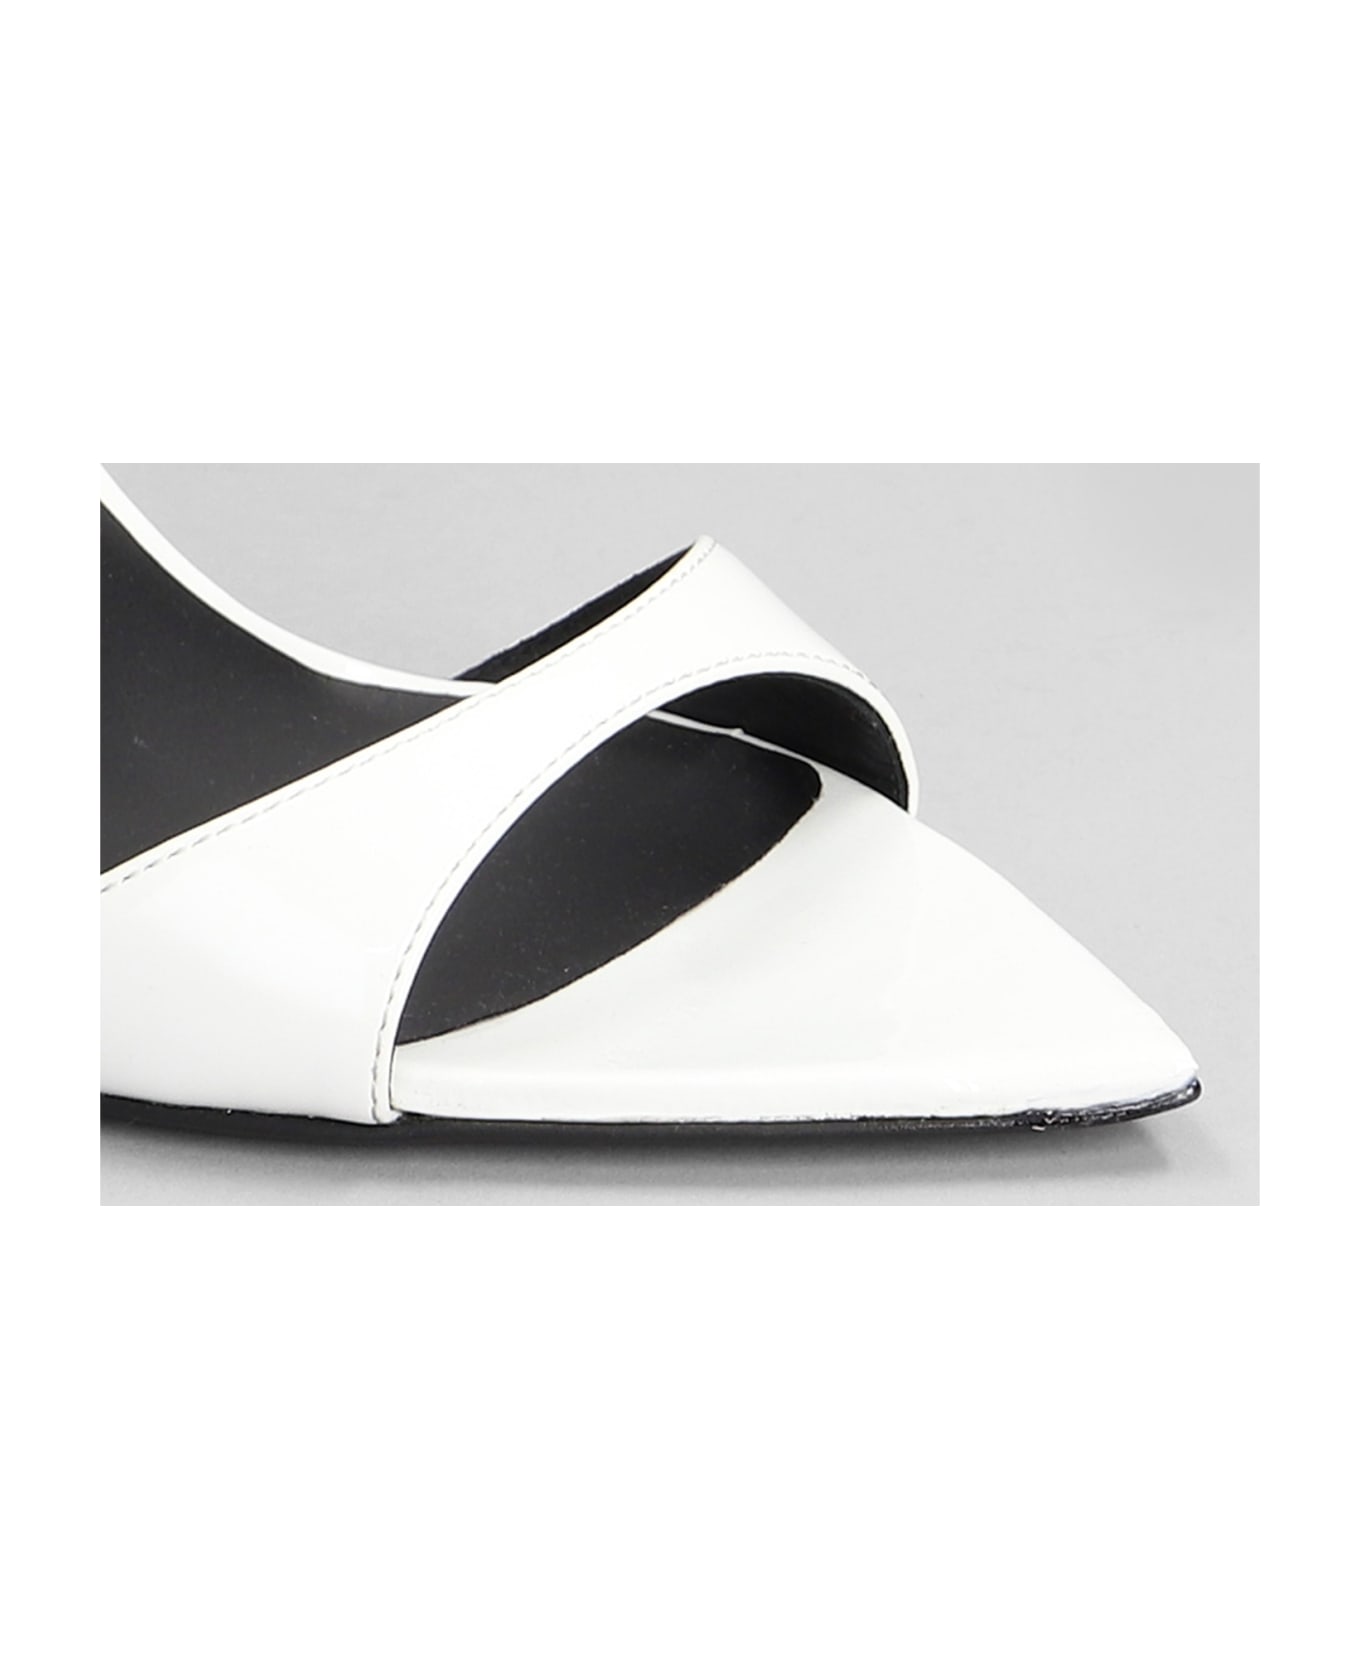 Giuseppe Zanotti Intrigo Strap Sandals In White Patent Leather - white